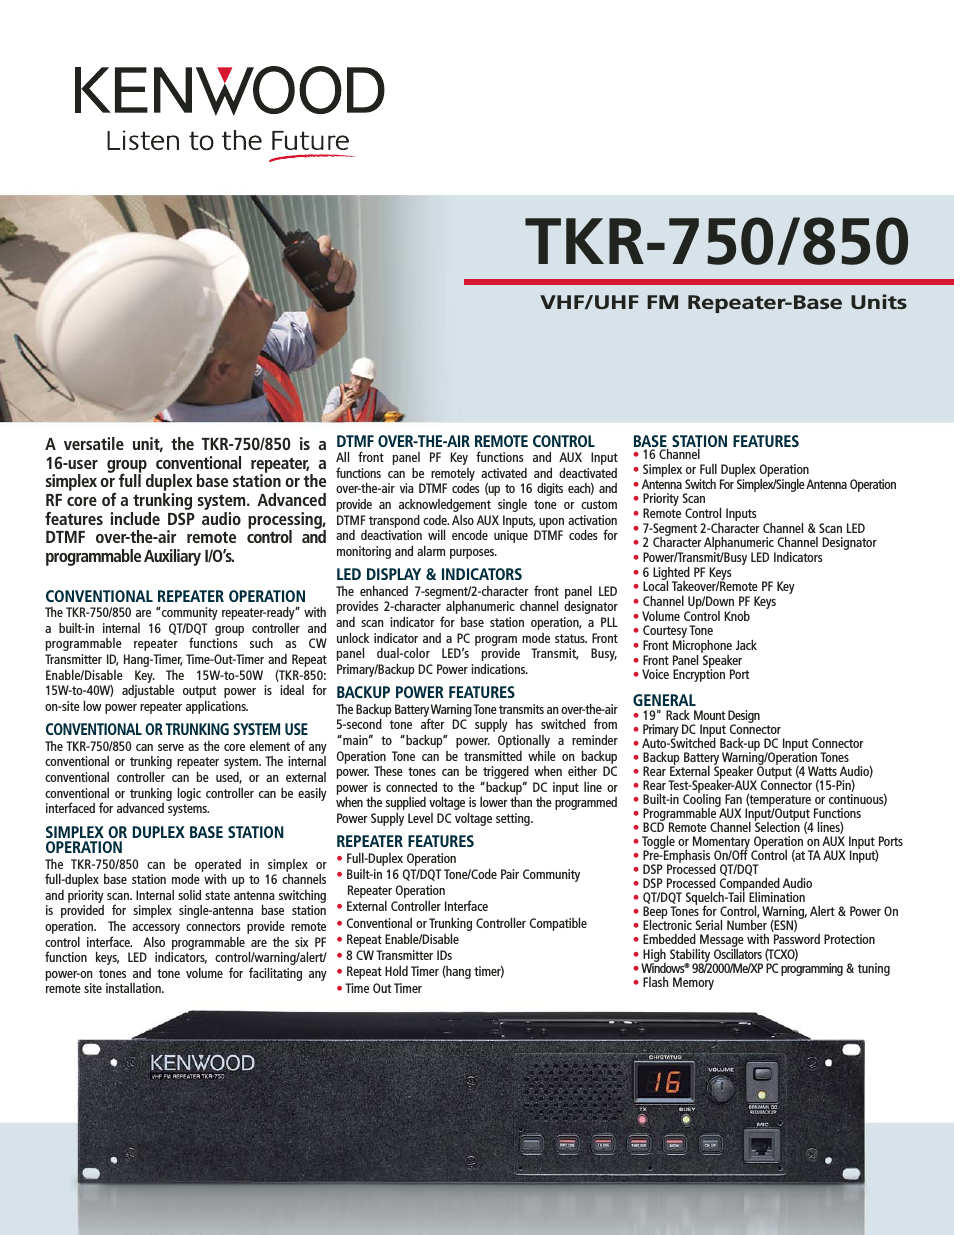 TKR-850